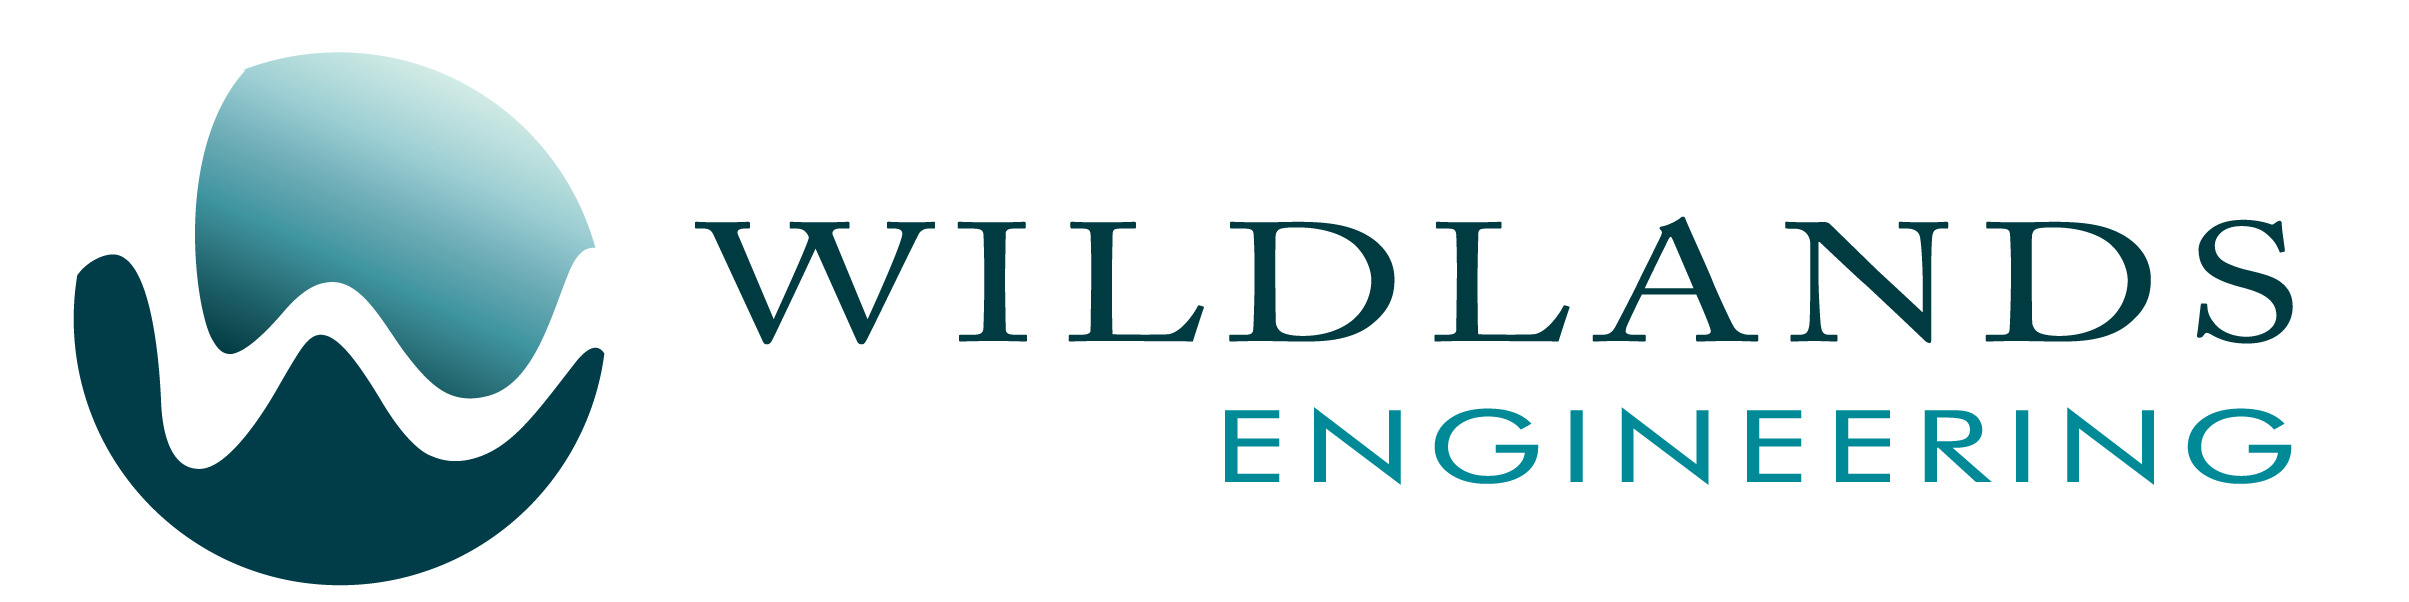 Wildlands Engineering Seeks Water Resources Engineer/Environmental Designer